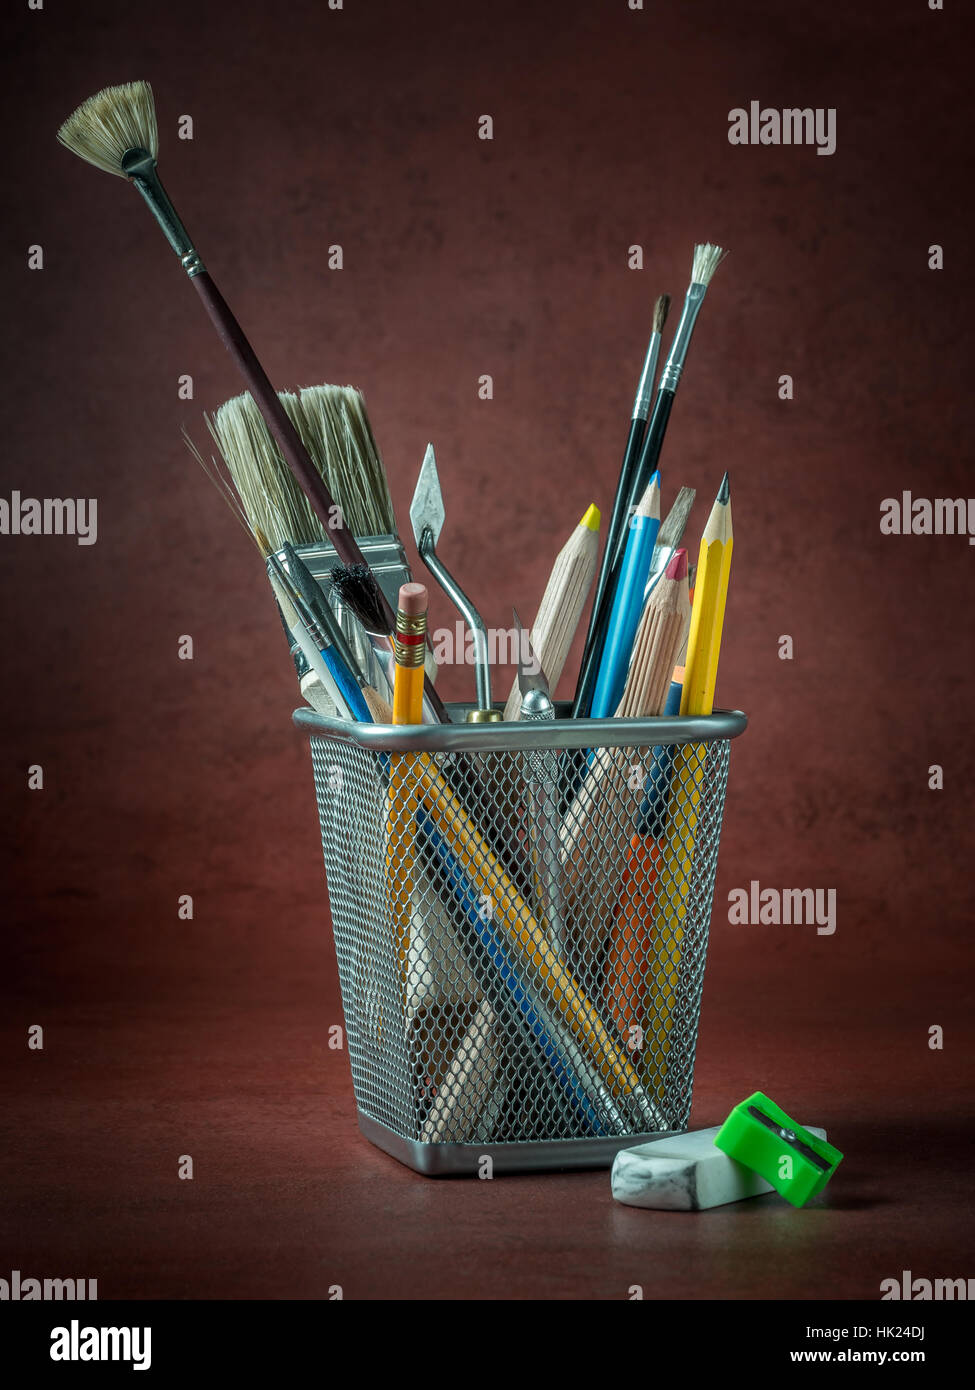 Artisti vari gli strumenti e accessori in contenitore metallico scuro su sfondo rosso Foto Stock